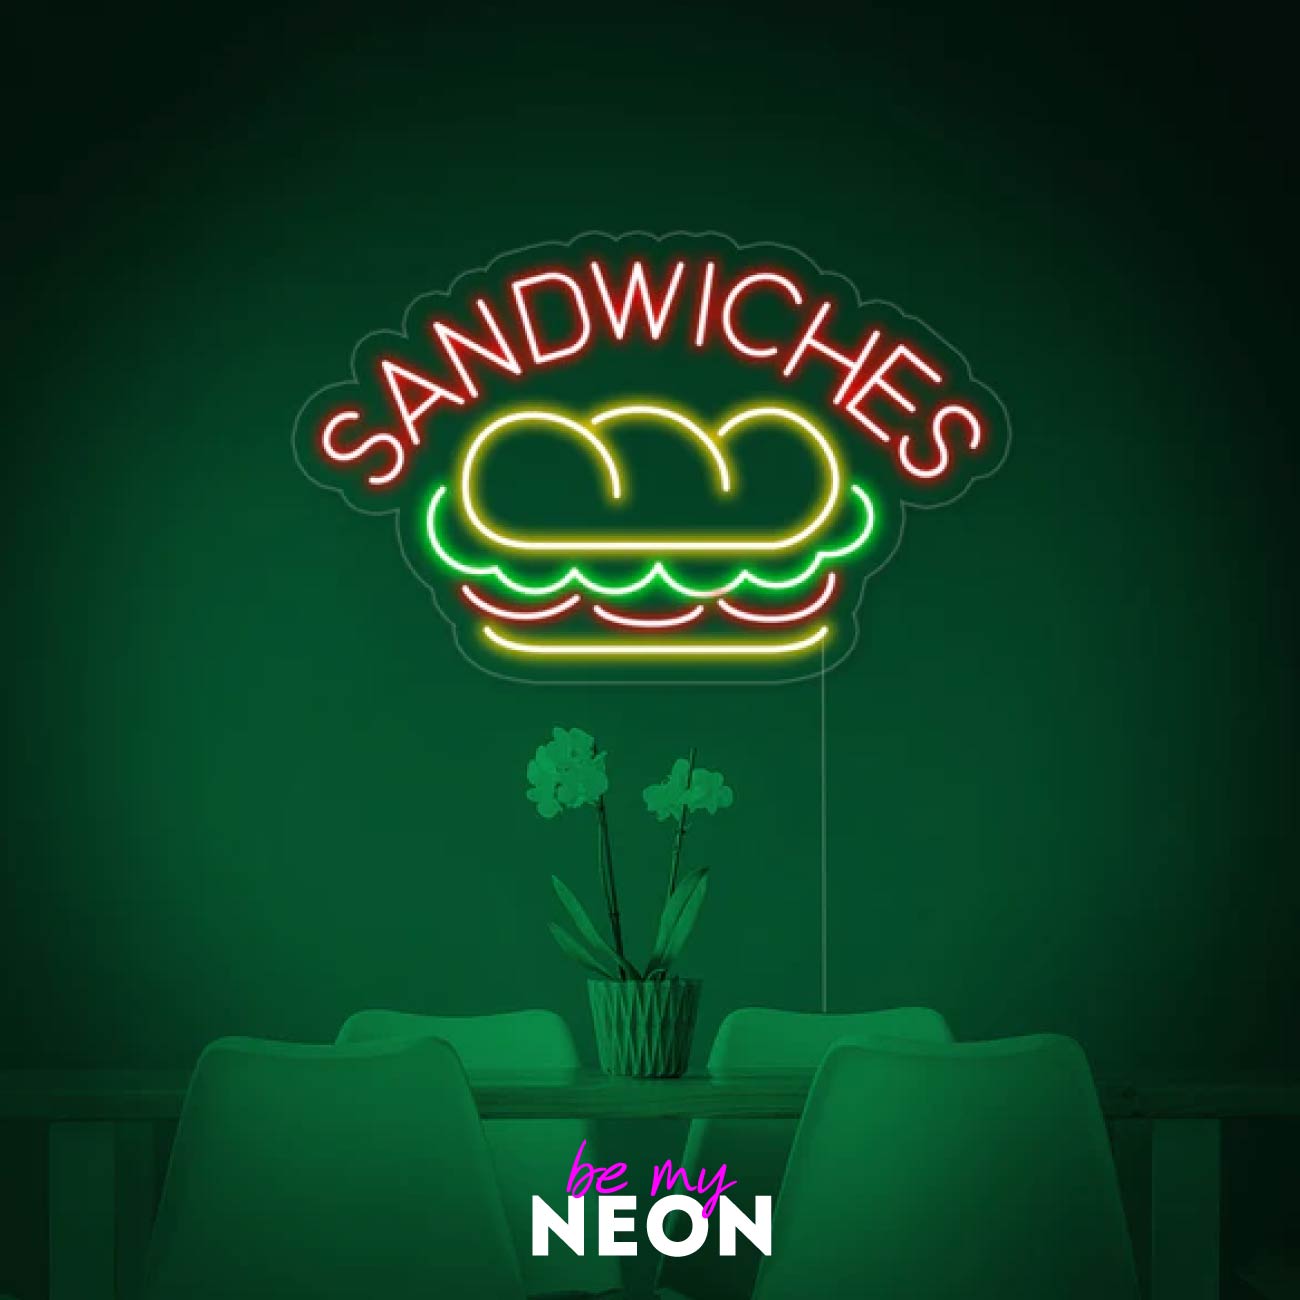 "SANDWICHES Essen" LED Neonschild